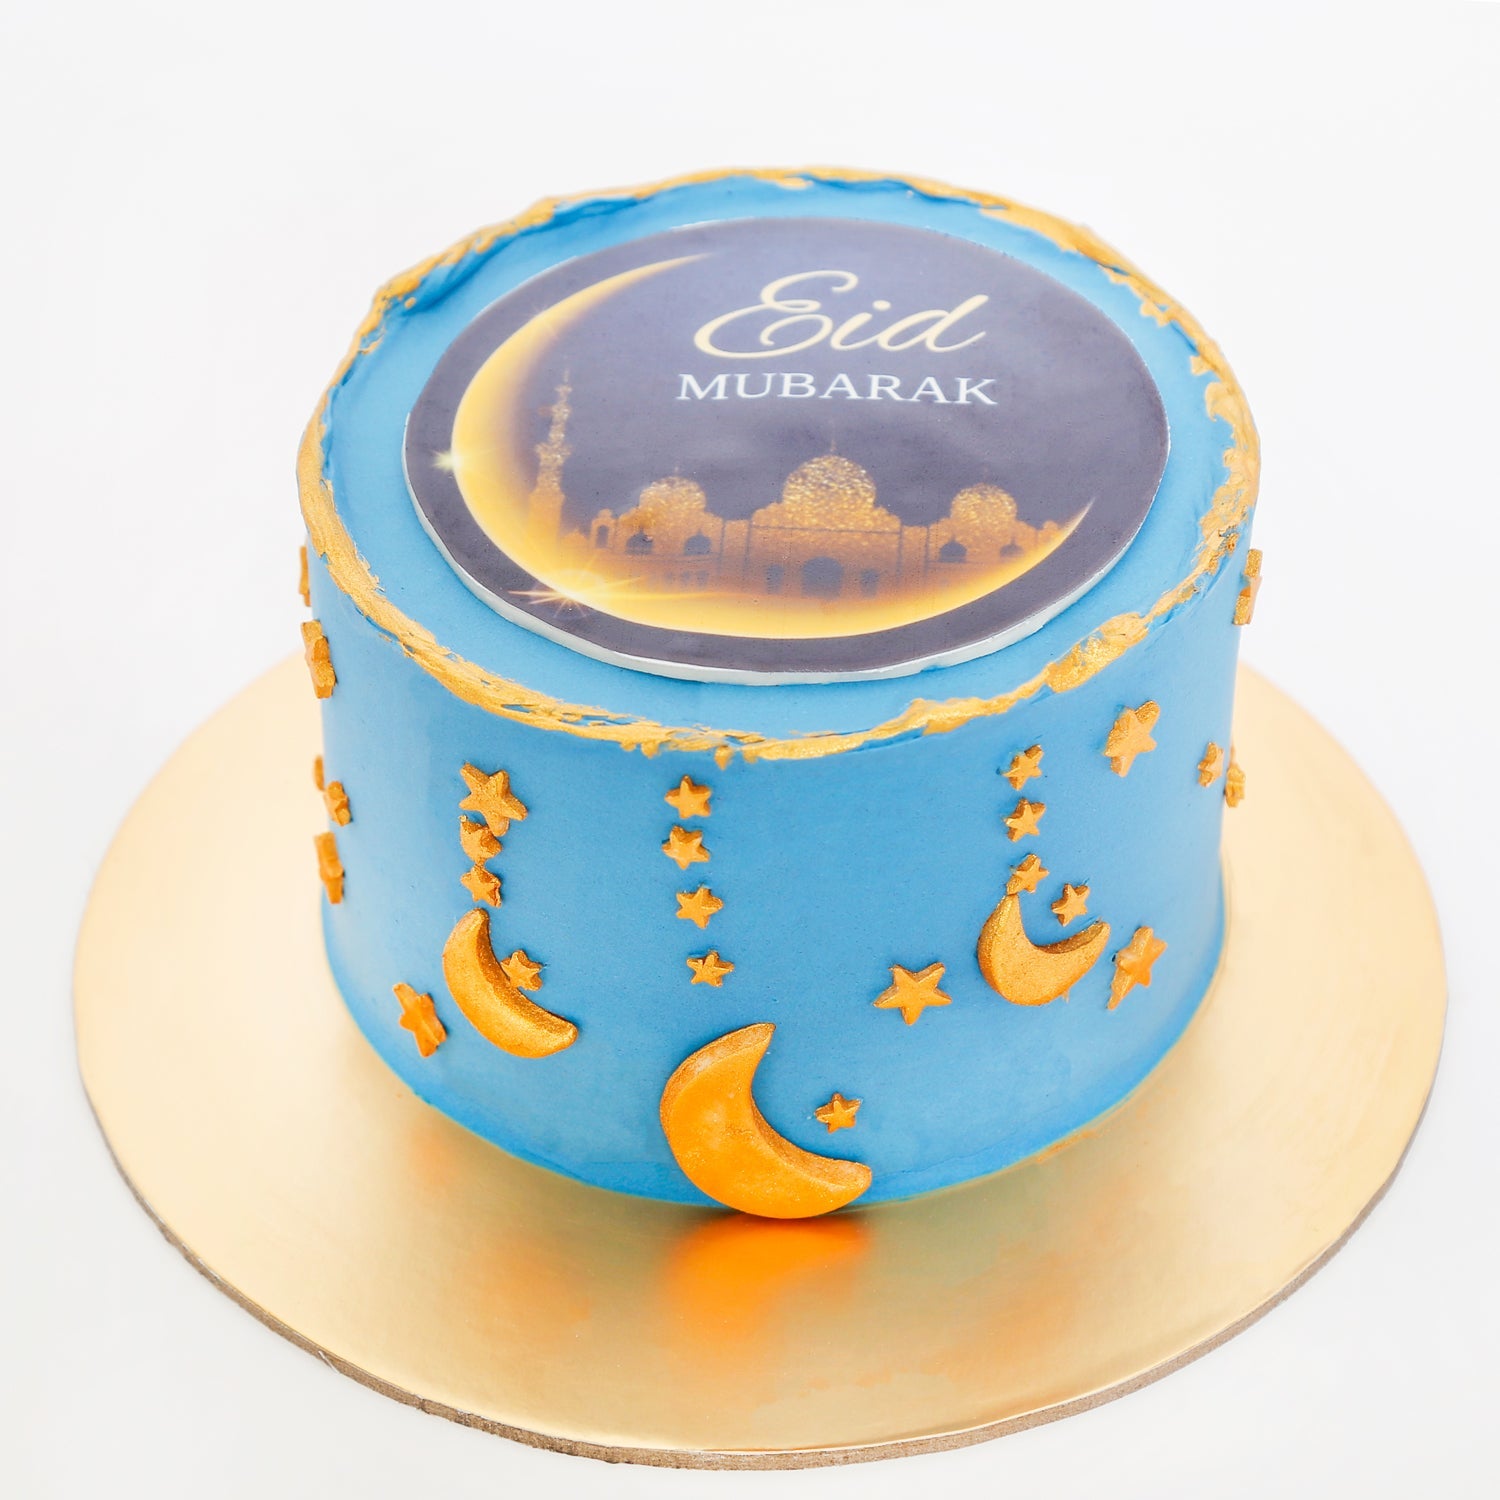 Eid Mubarak I Turquoise Cake